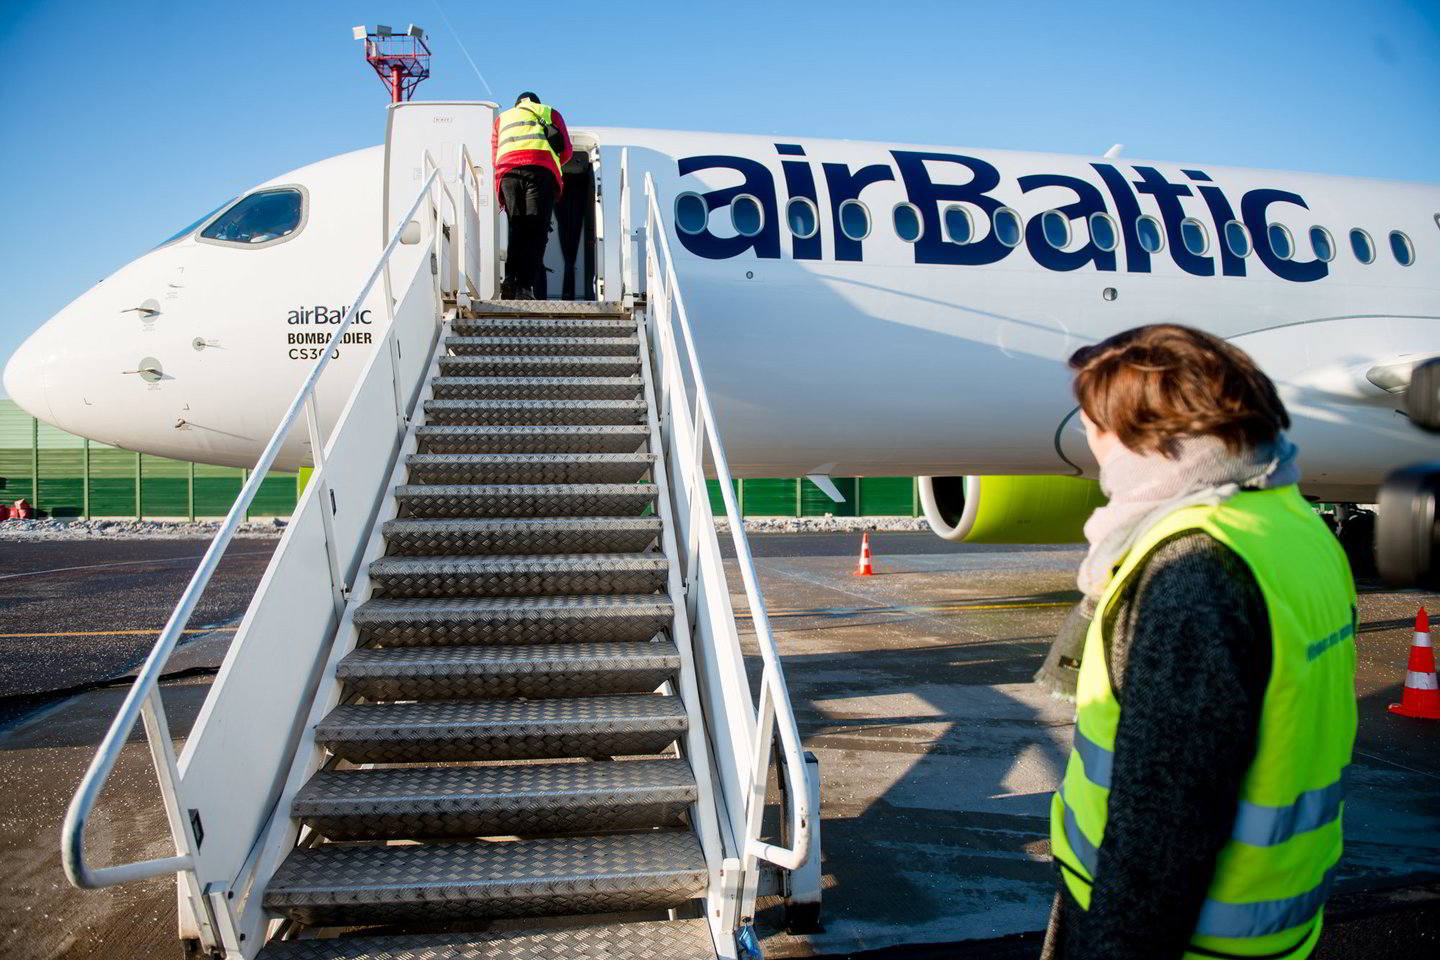 Latvijos nacionalinės oro linijos „airBaltic“ pripažintos punktualiausiomis pasaulyje – net 90 proc. jų skrydžių pasiekė tikslą laiku. <br>J.Stacevičiaus nuotr.